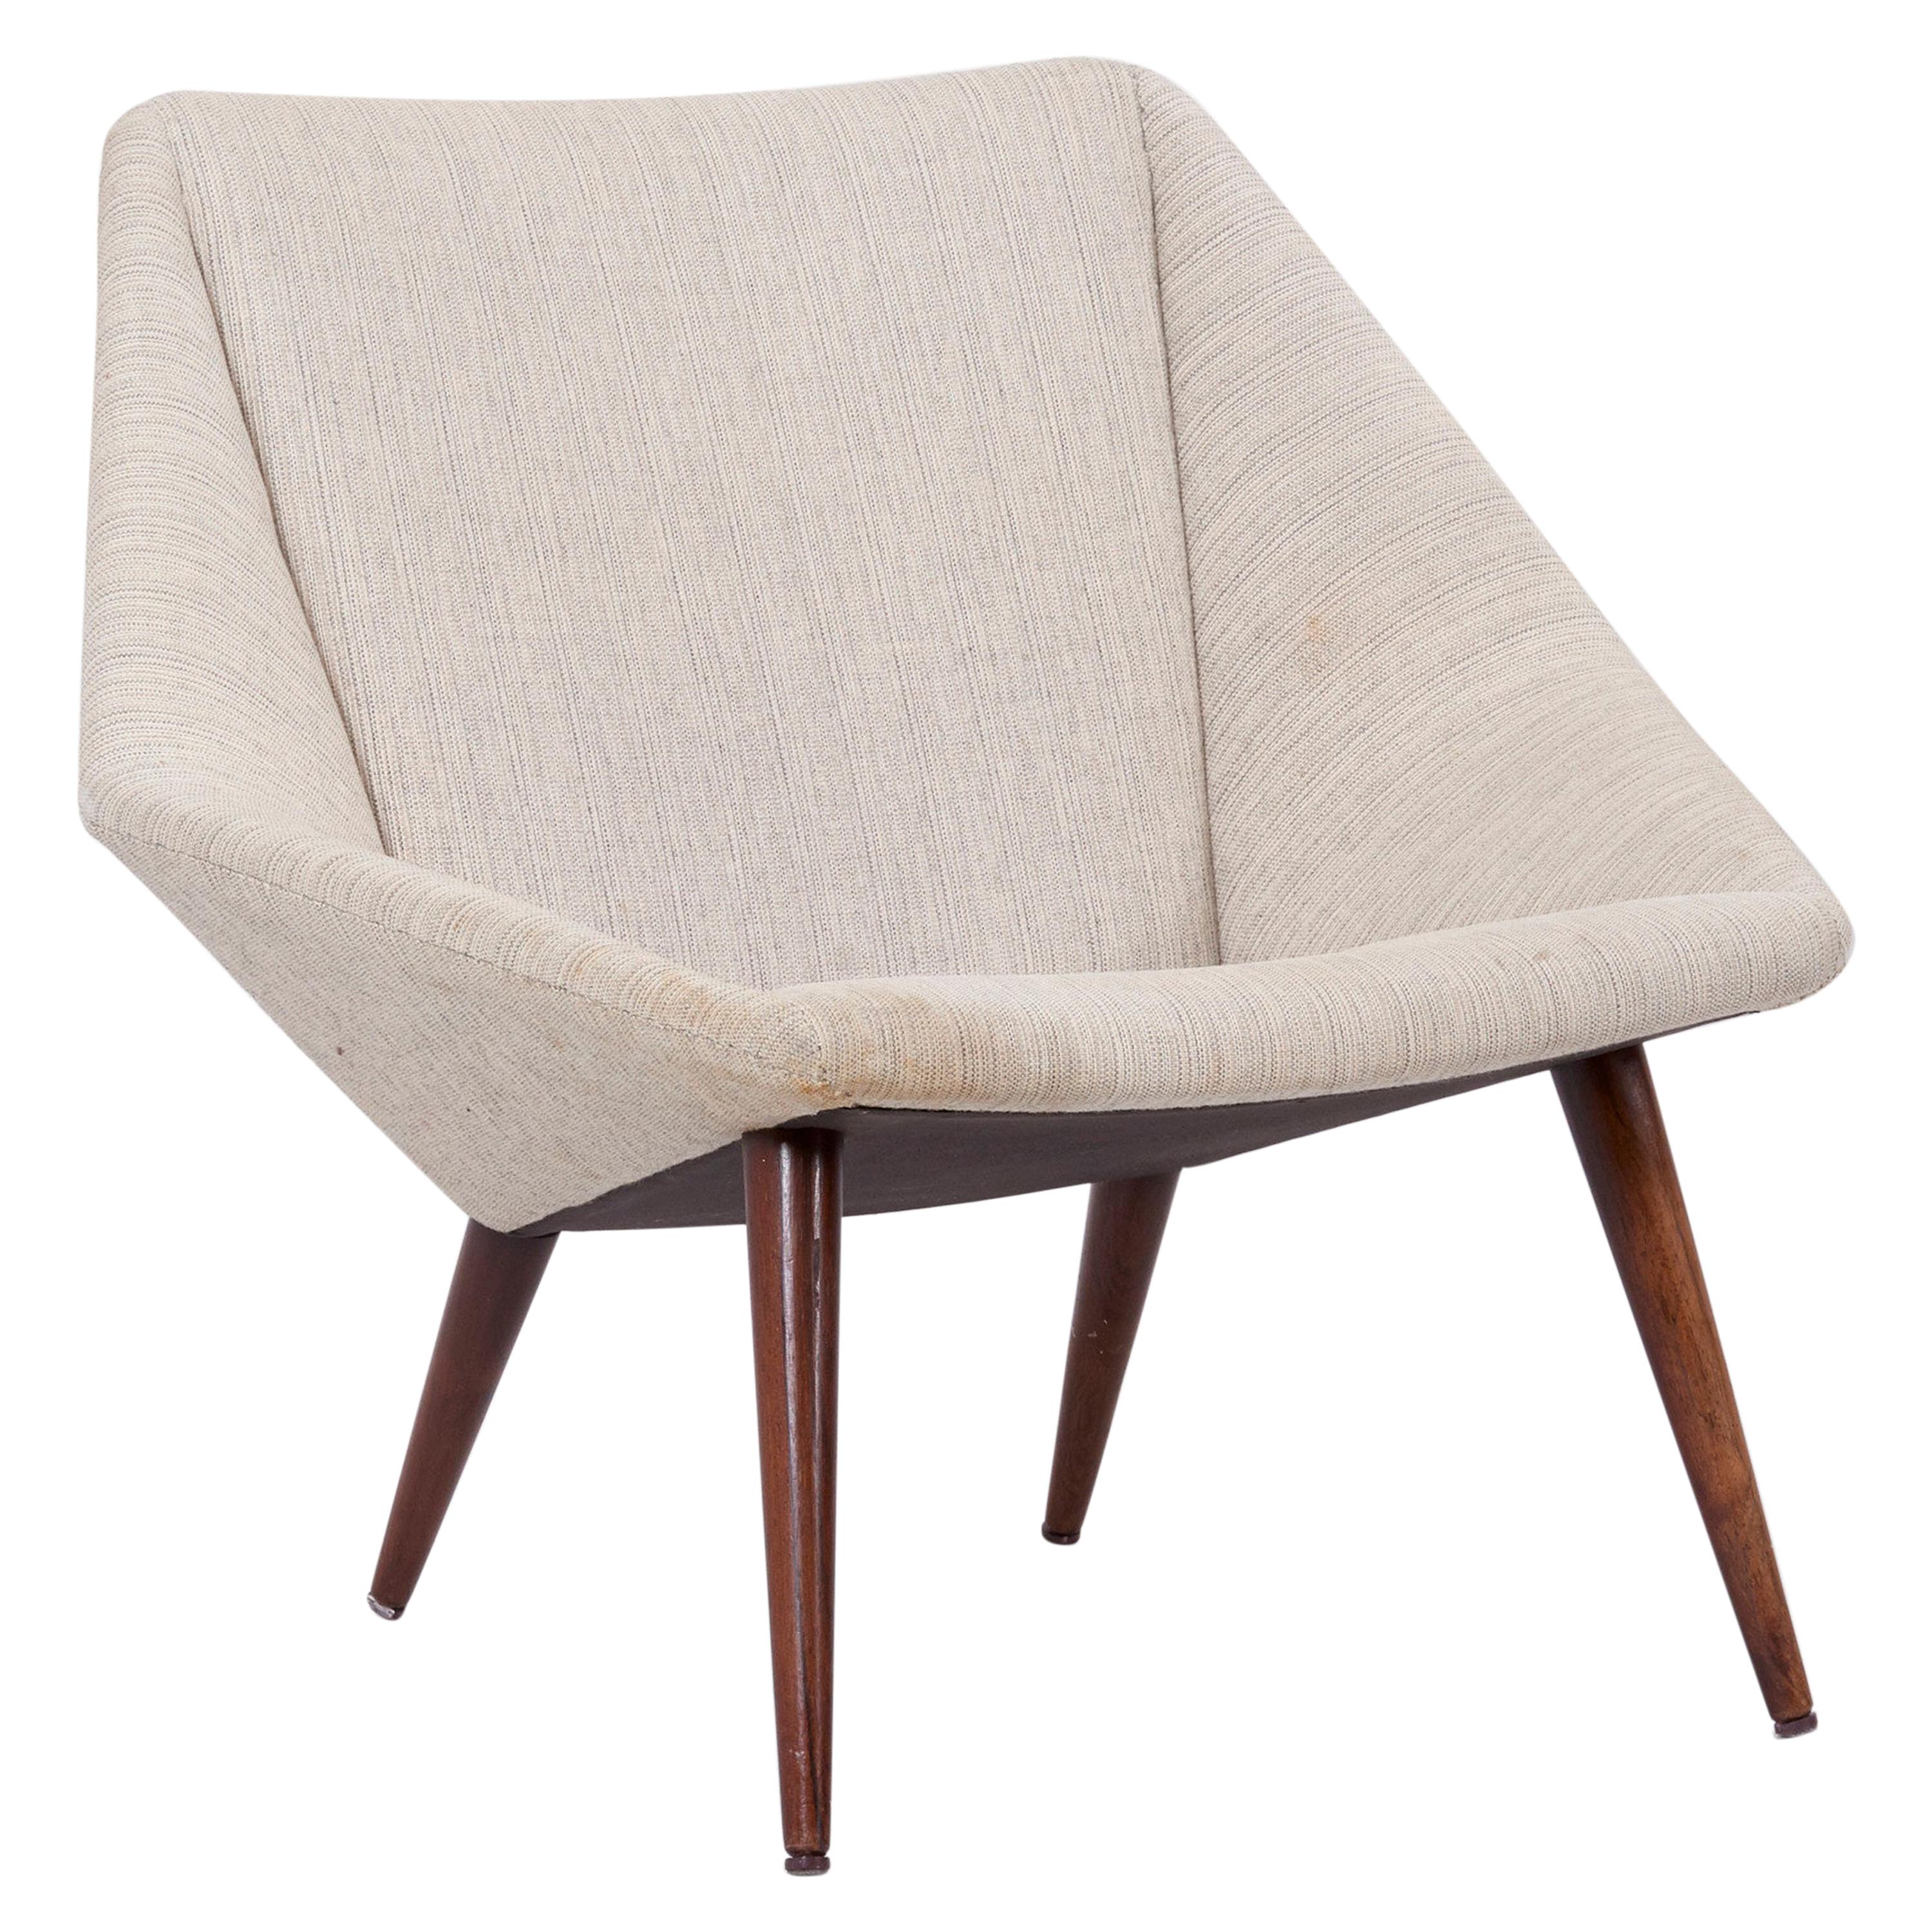 Low Back Lounge Chair 93 by Nanna Ditzel for Søren Willadsen, Denmark, 1950s